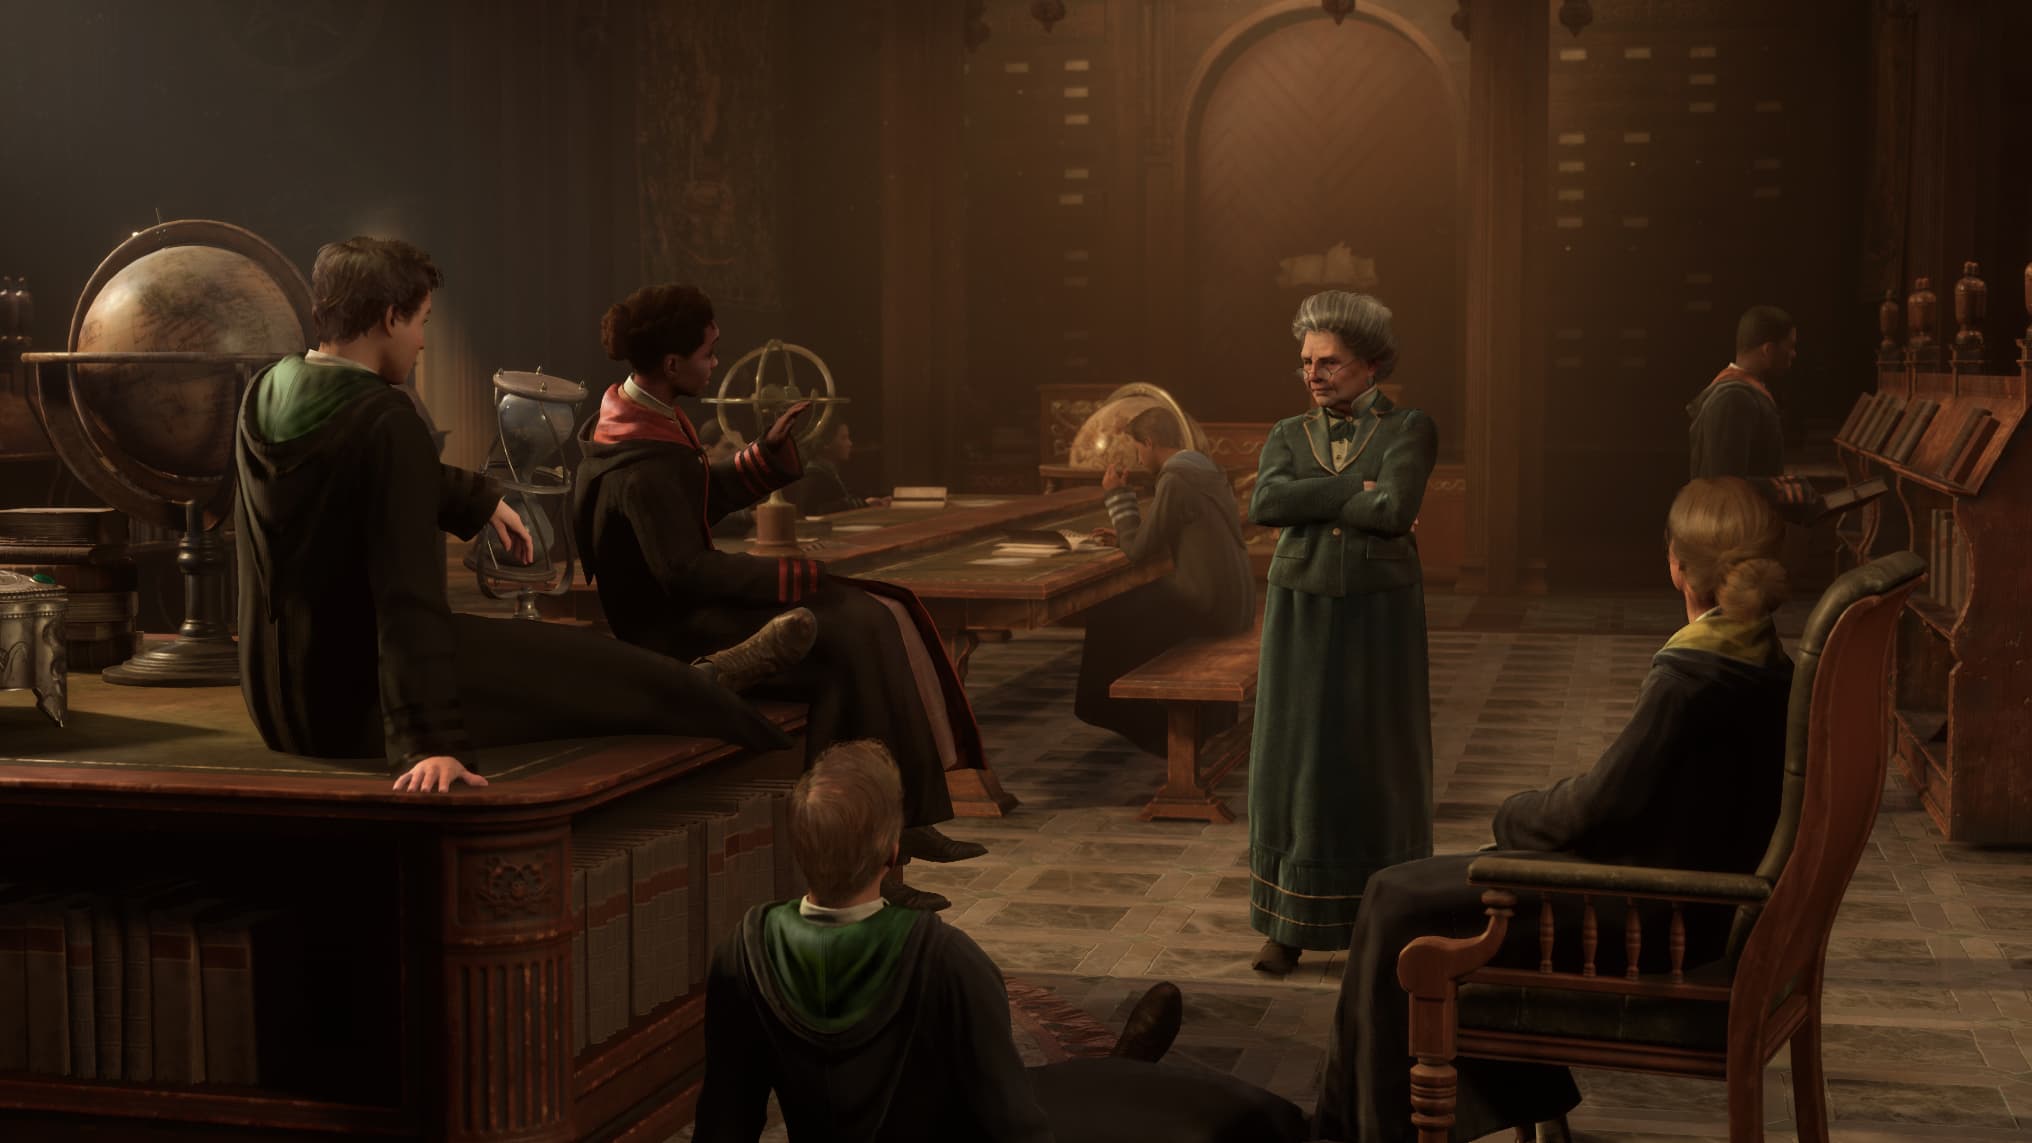 Hogwarts Legacy»: un jeu vidéo sur l'univers d'Harry Potter arrive